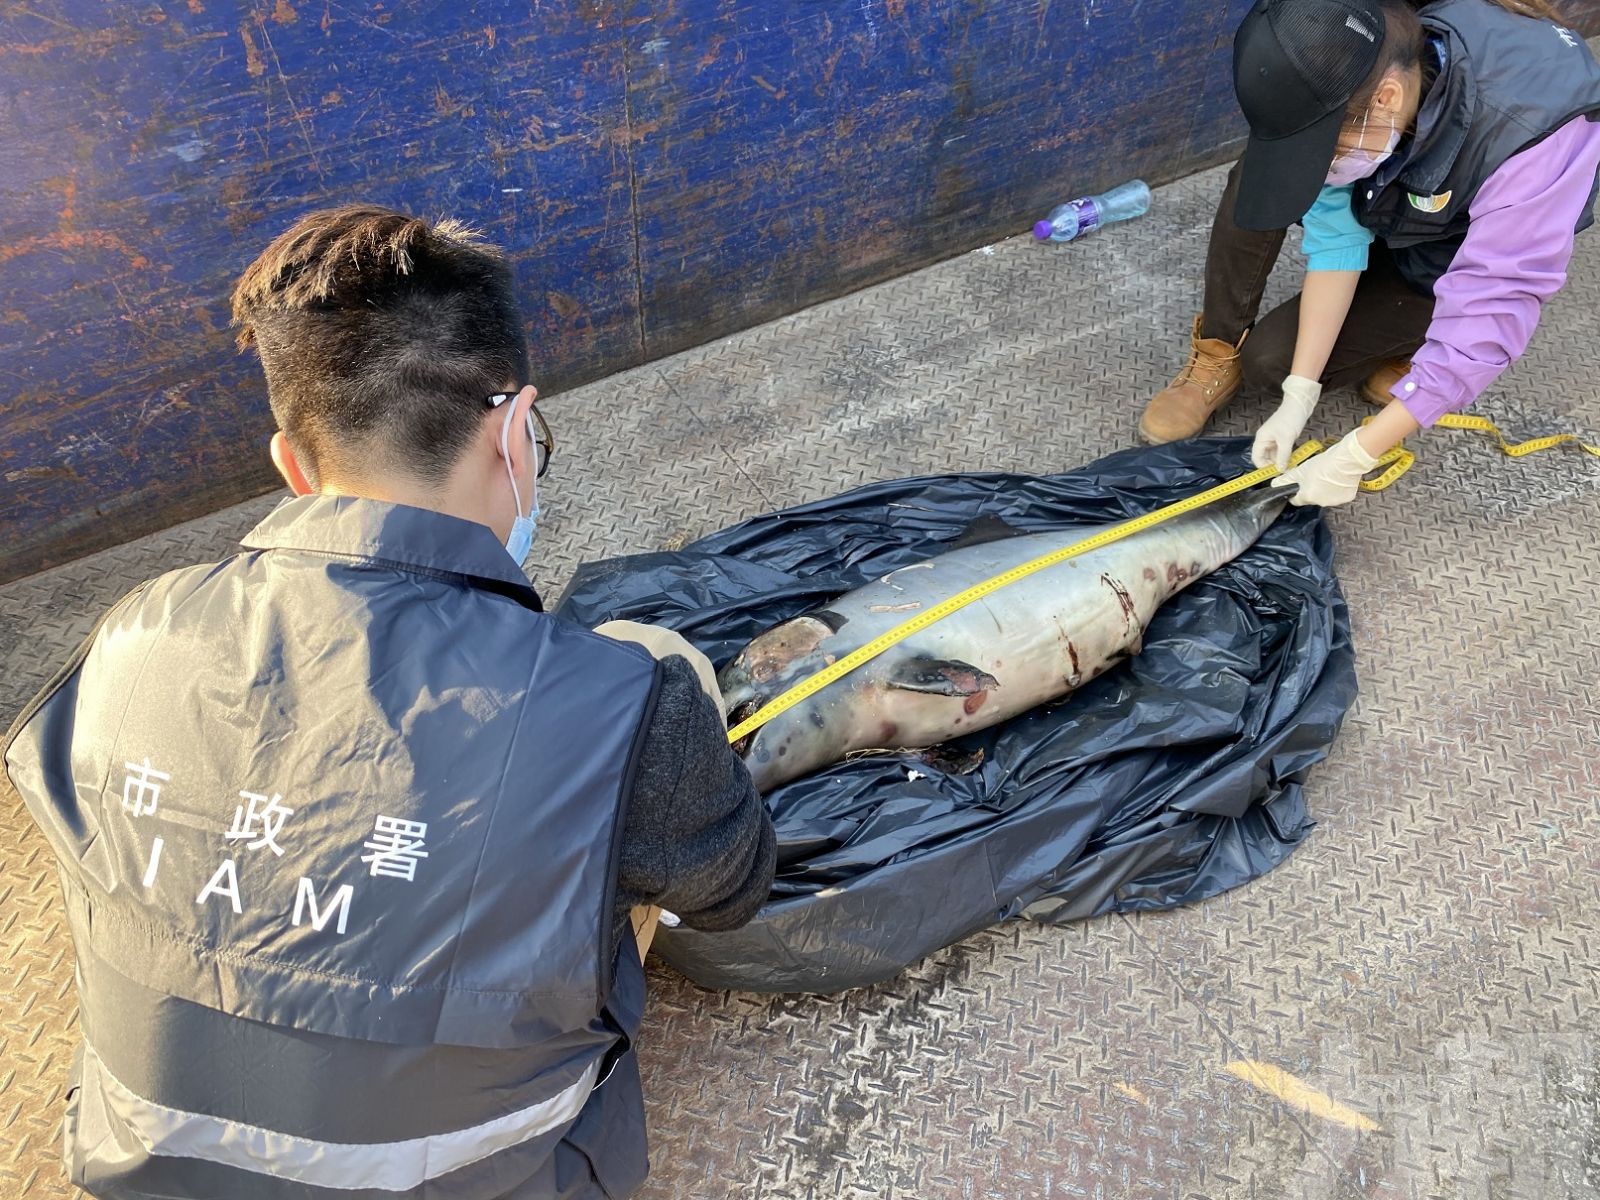 澳門機場跑道附近發現中華白海豚屍體